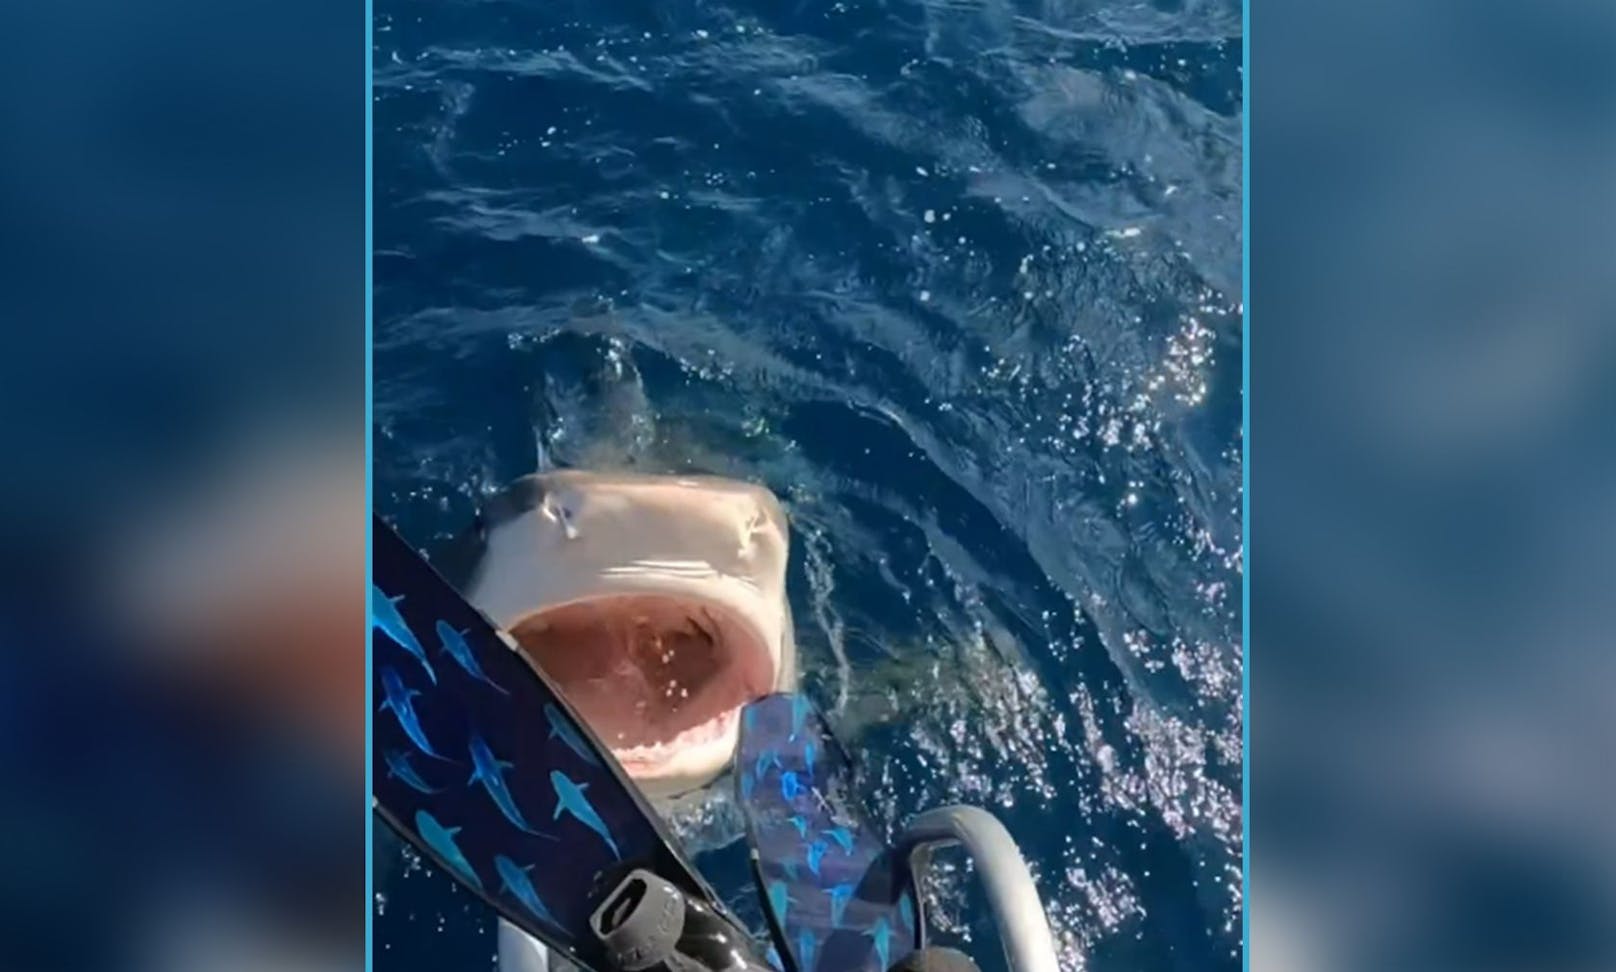 "Das war kein Hai-Angriff" – Taucherin klärt auf